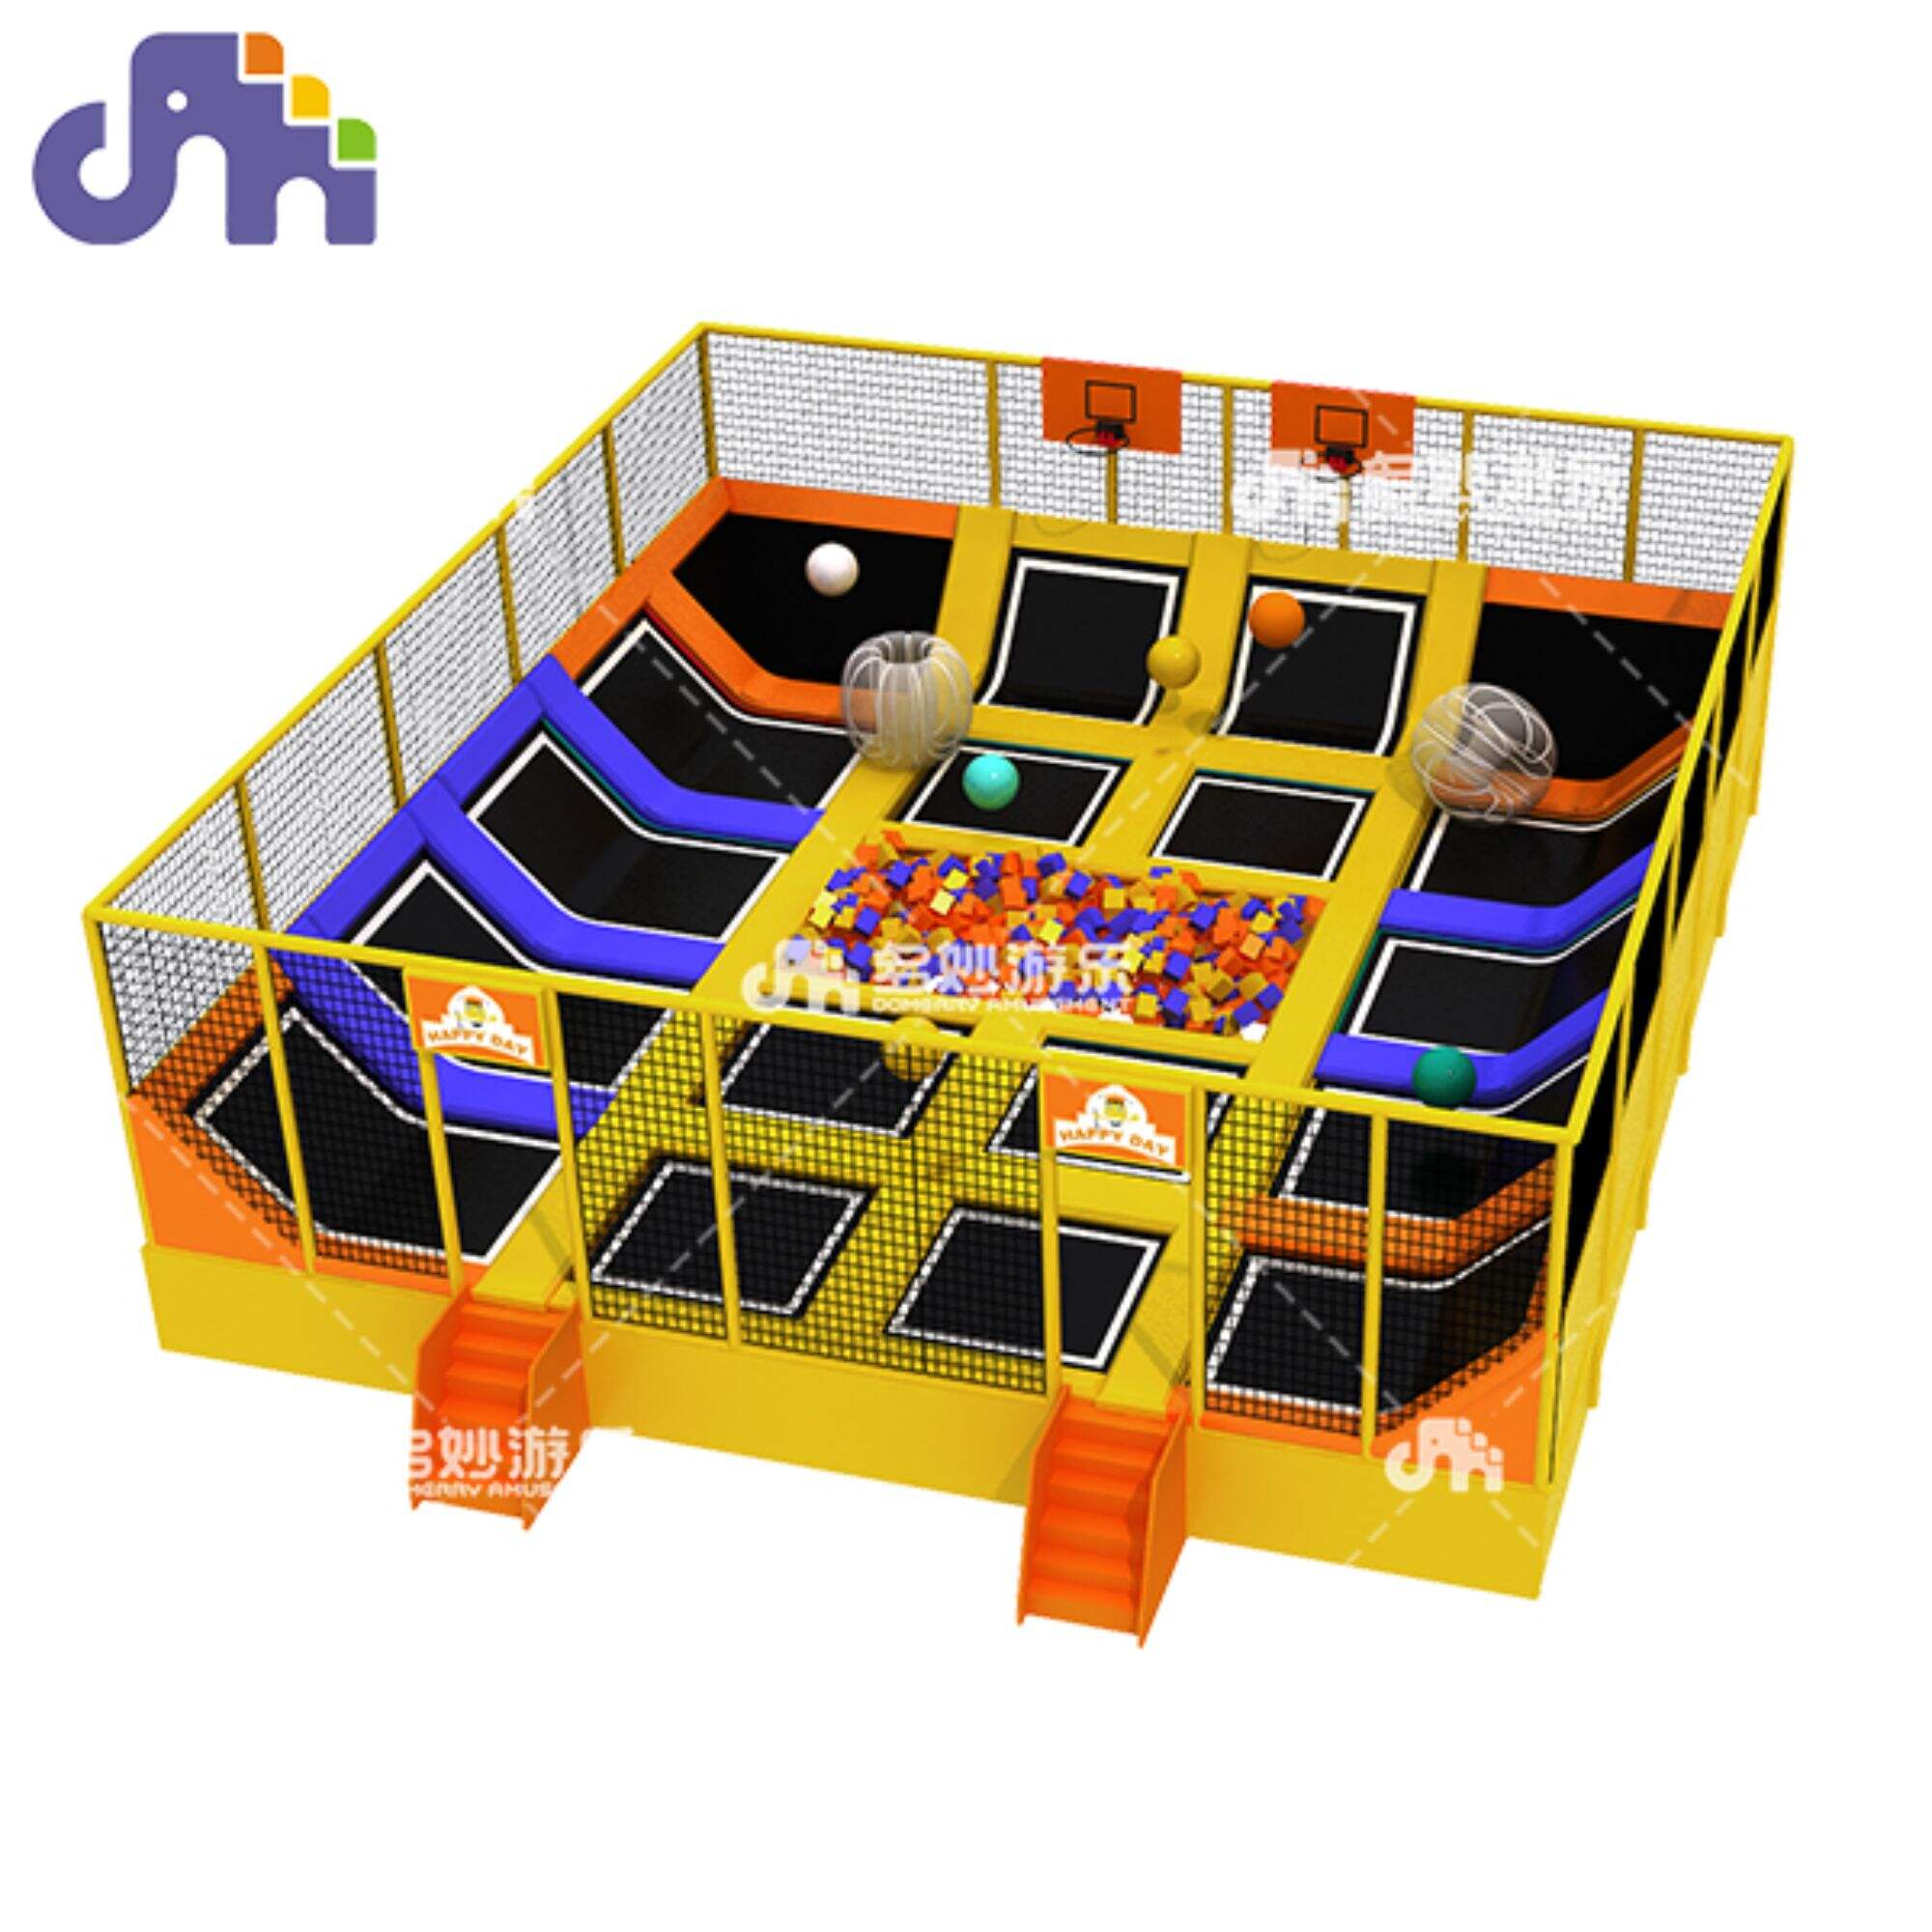 Kids' Amusement Park Trampoline Park Jumping Trampoline para sa Walang katapusang Kasayahan at Aktibong Paglalaro